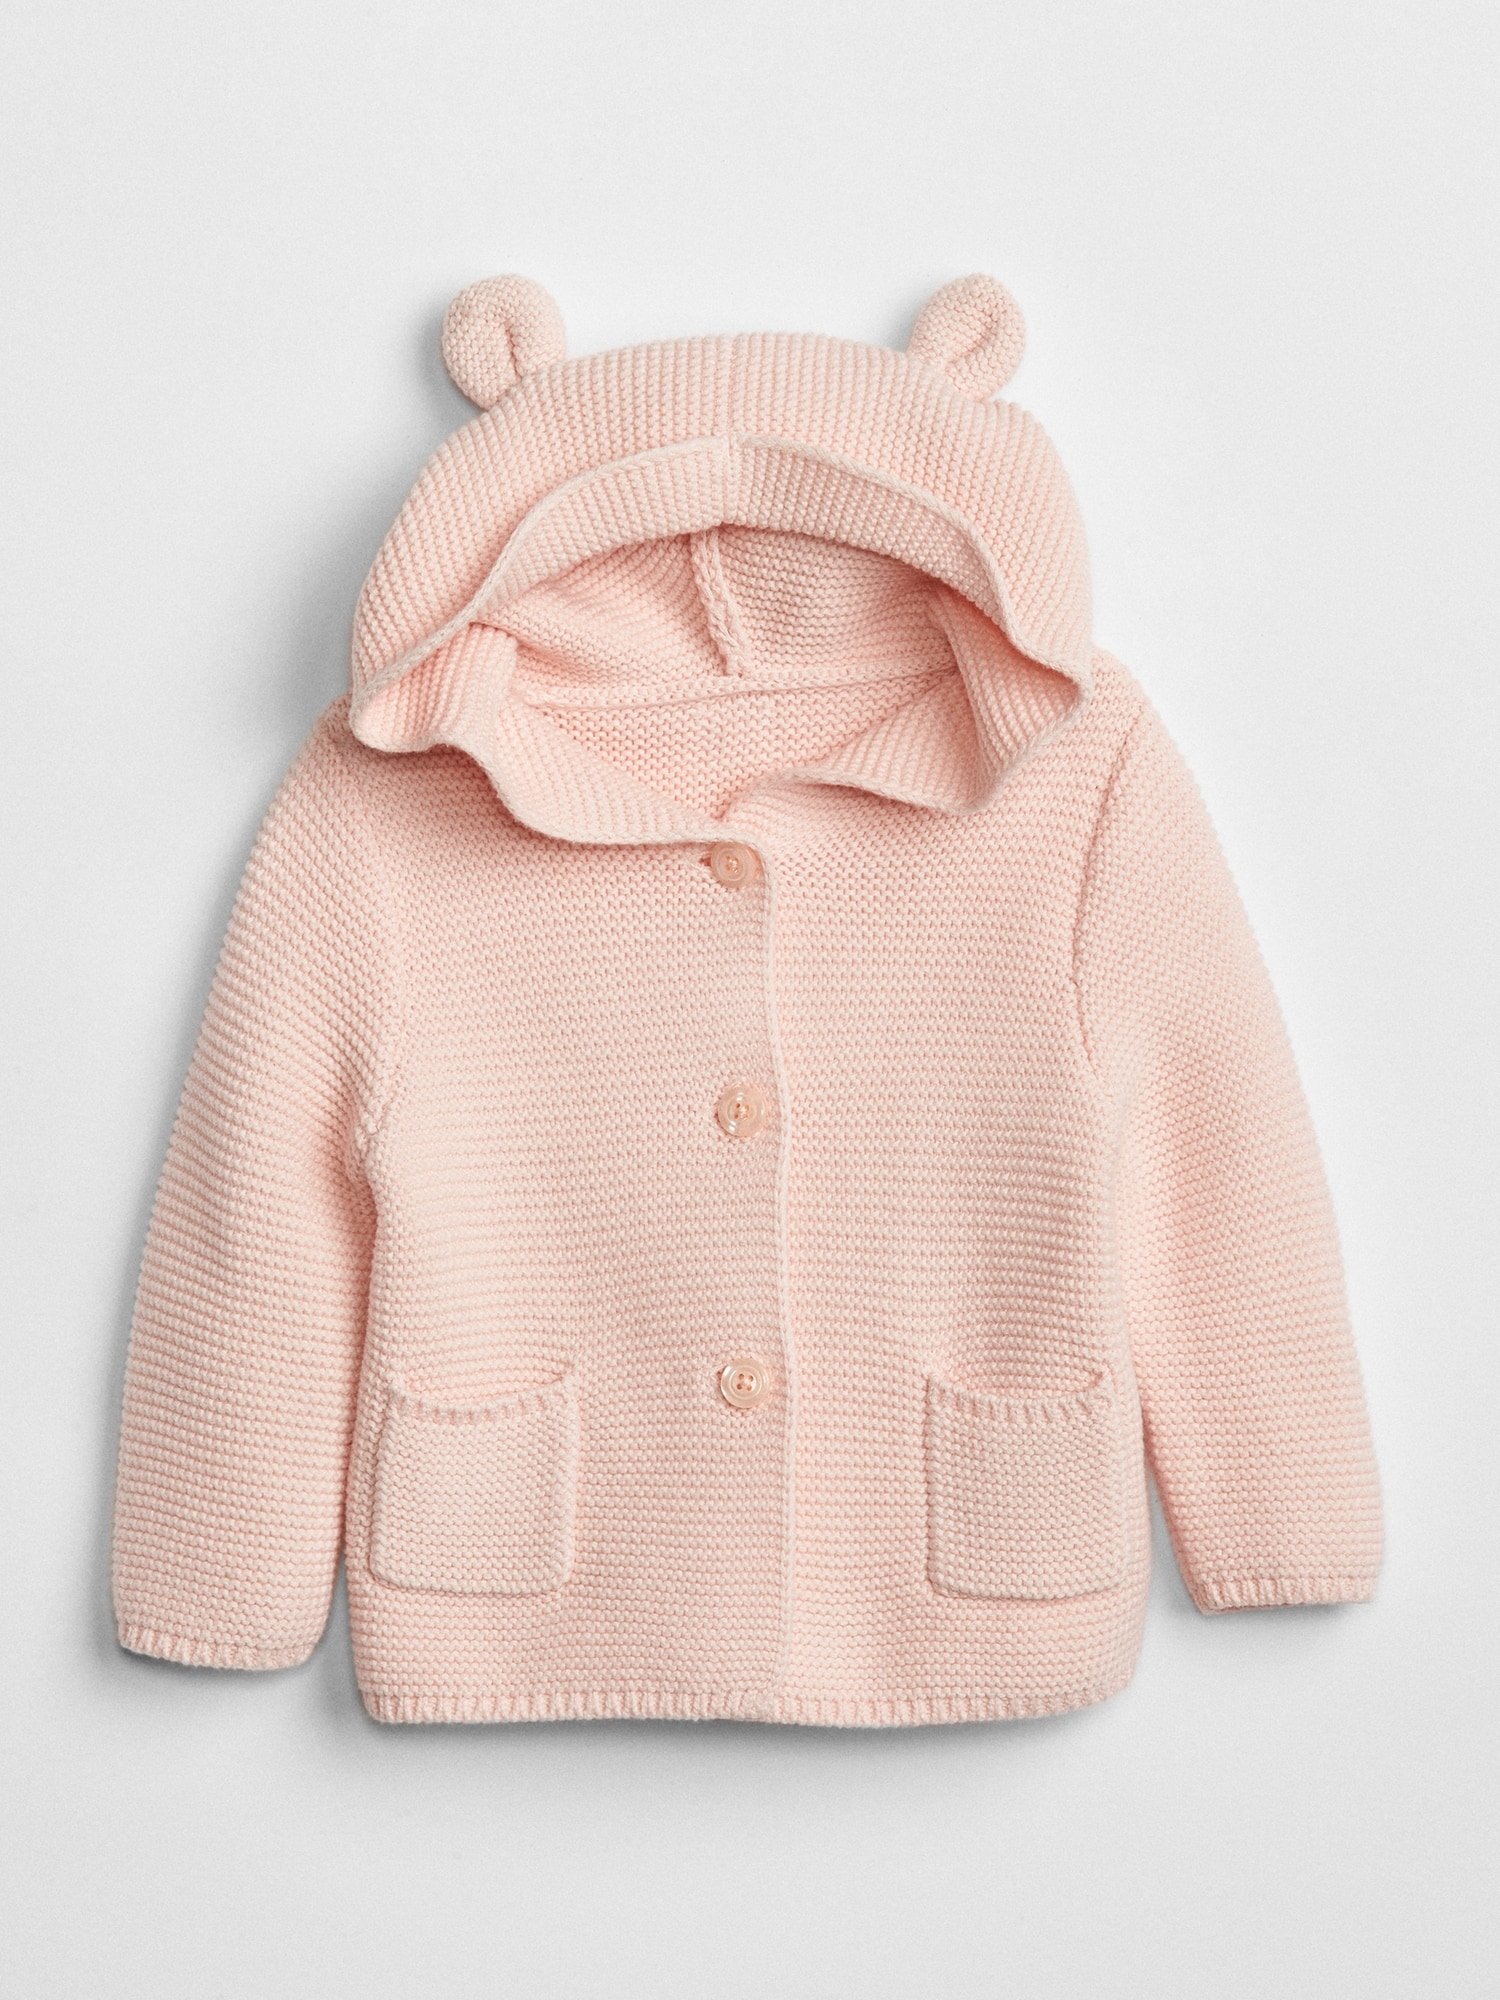 Fotografie Růžový holčičí baby svetr brannan bear sweater